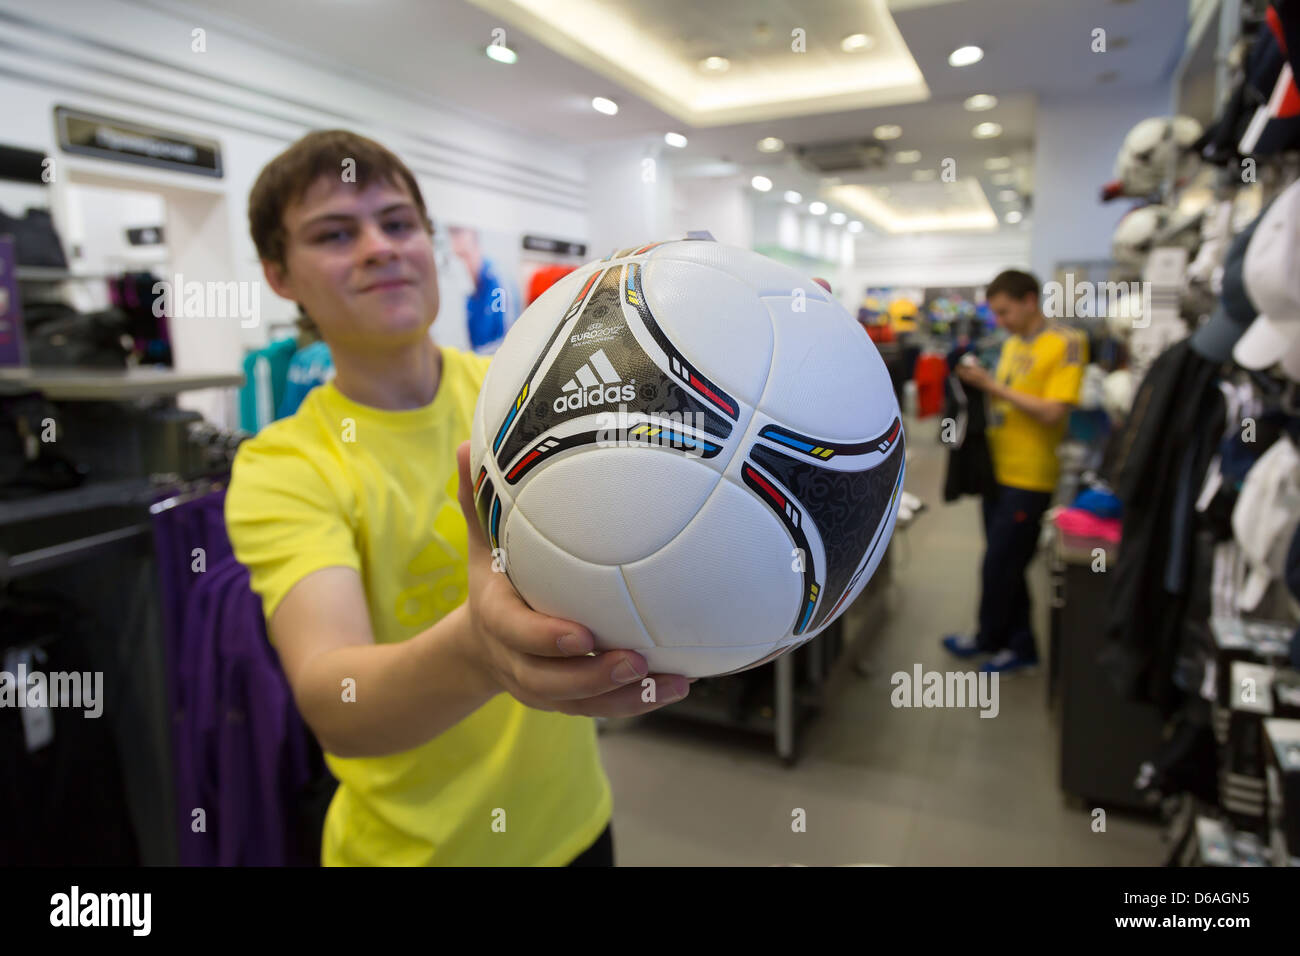 Lviv, Ucrania, distribuidor adidas tiendas con el balón oficial del de la UEFA EURO 2012, el Adidas Tango 12 Fotografía de stock Alamy